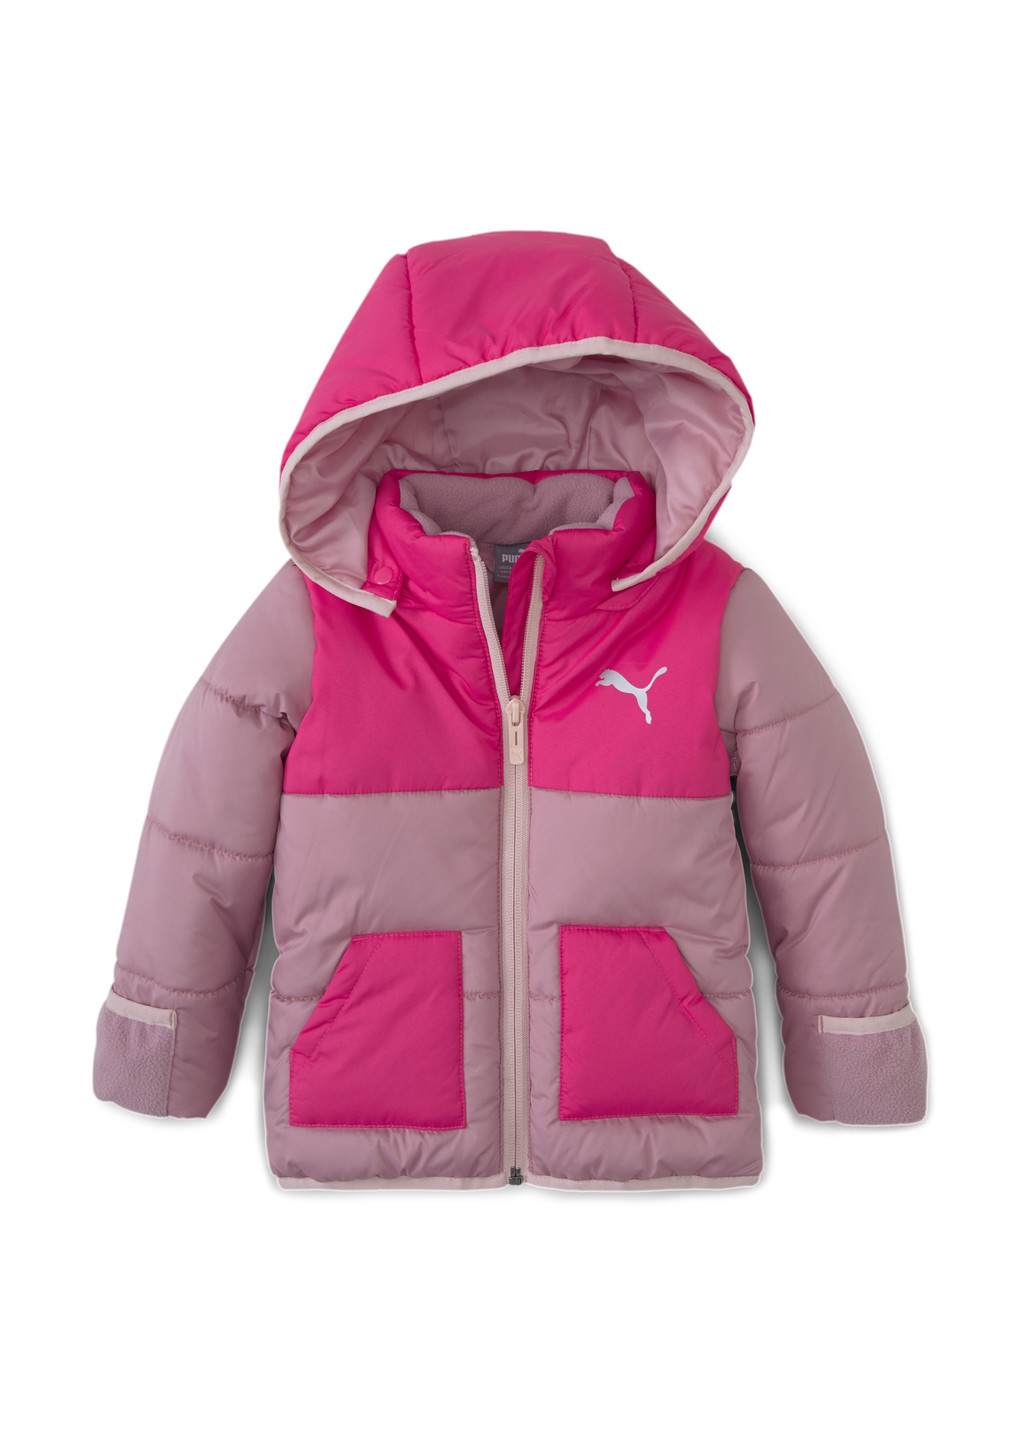 Розовая демисезонная детская куртка minicats padded jacket Puma